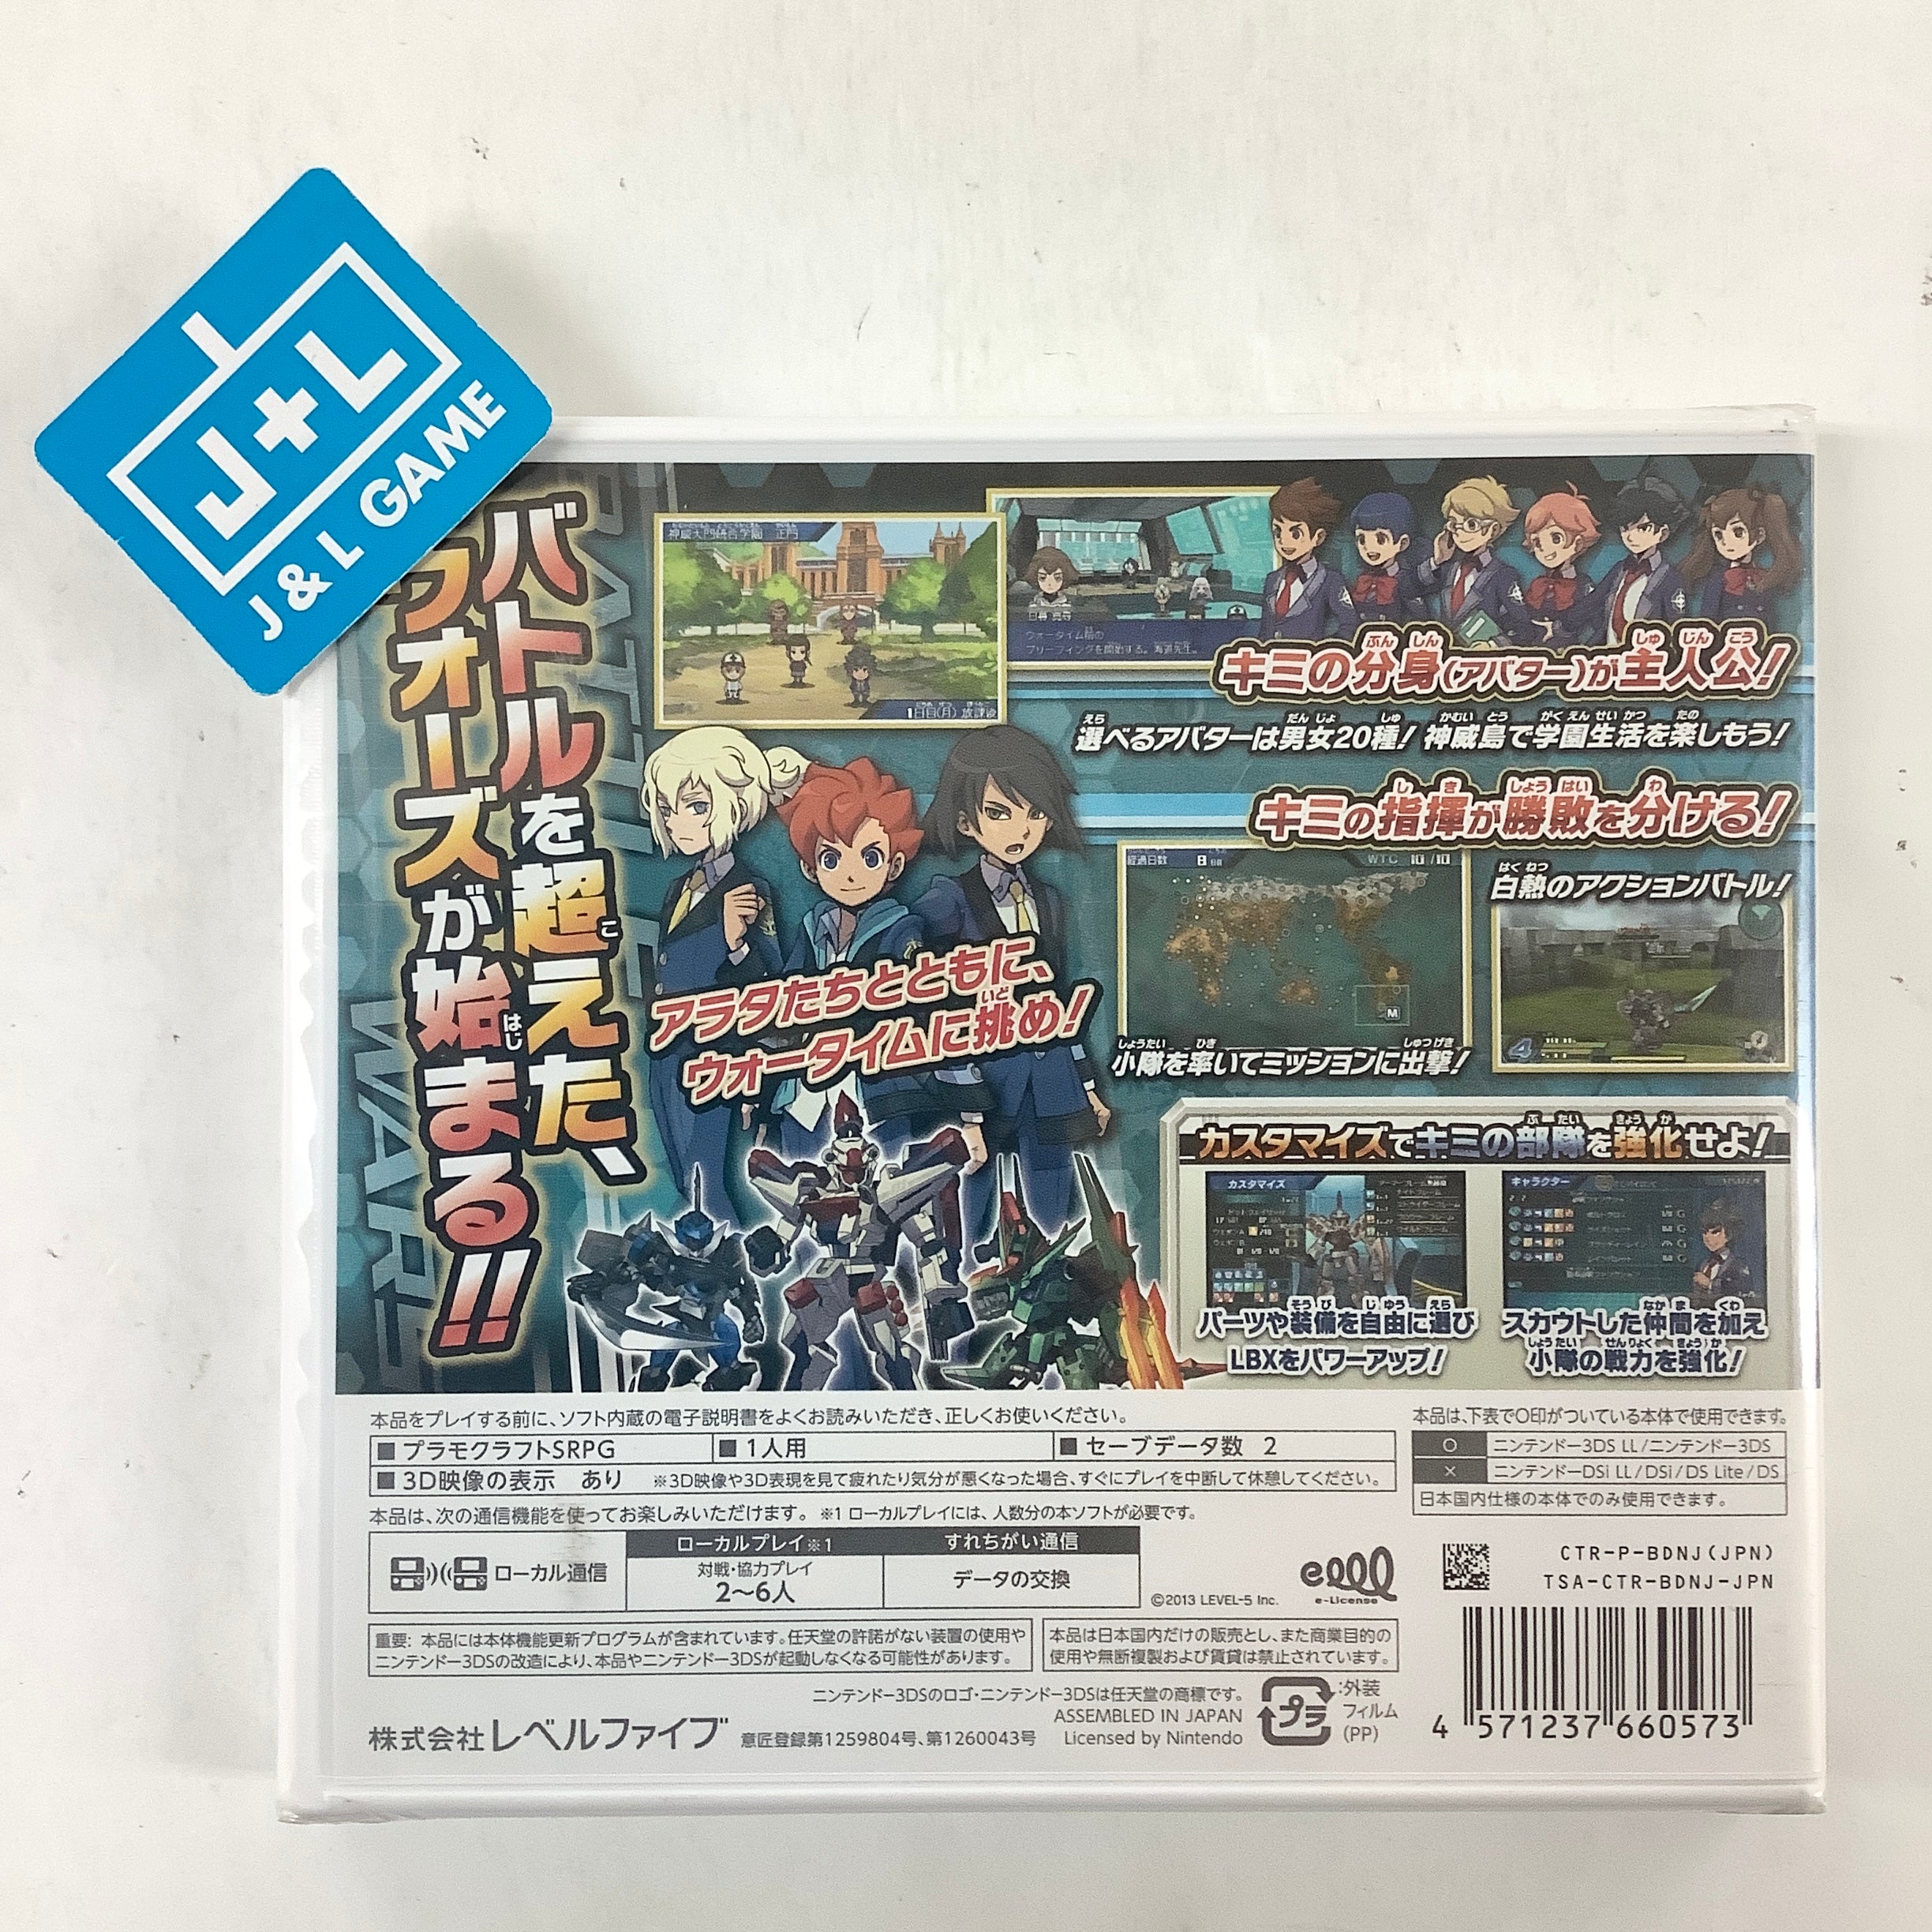 Danball Senki Wars - Nintendo 3DS (Japanese Import) Video Games Level 5   